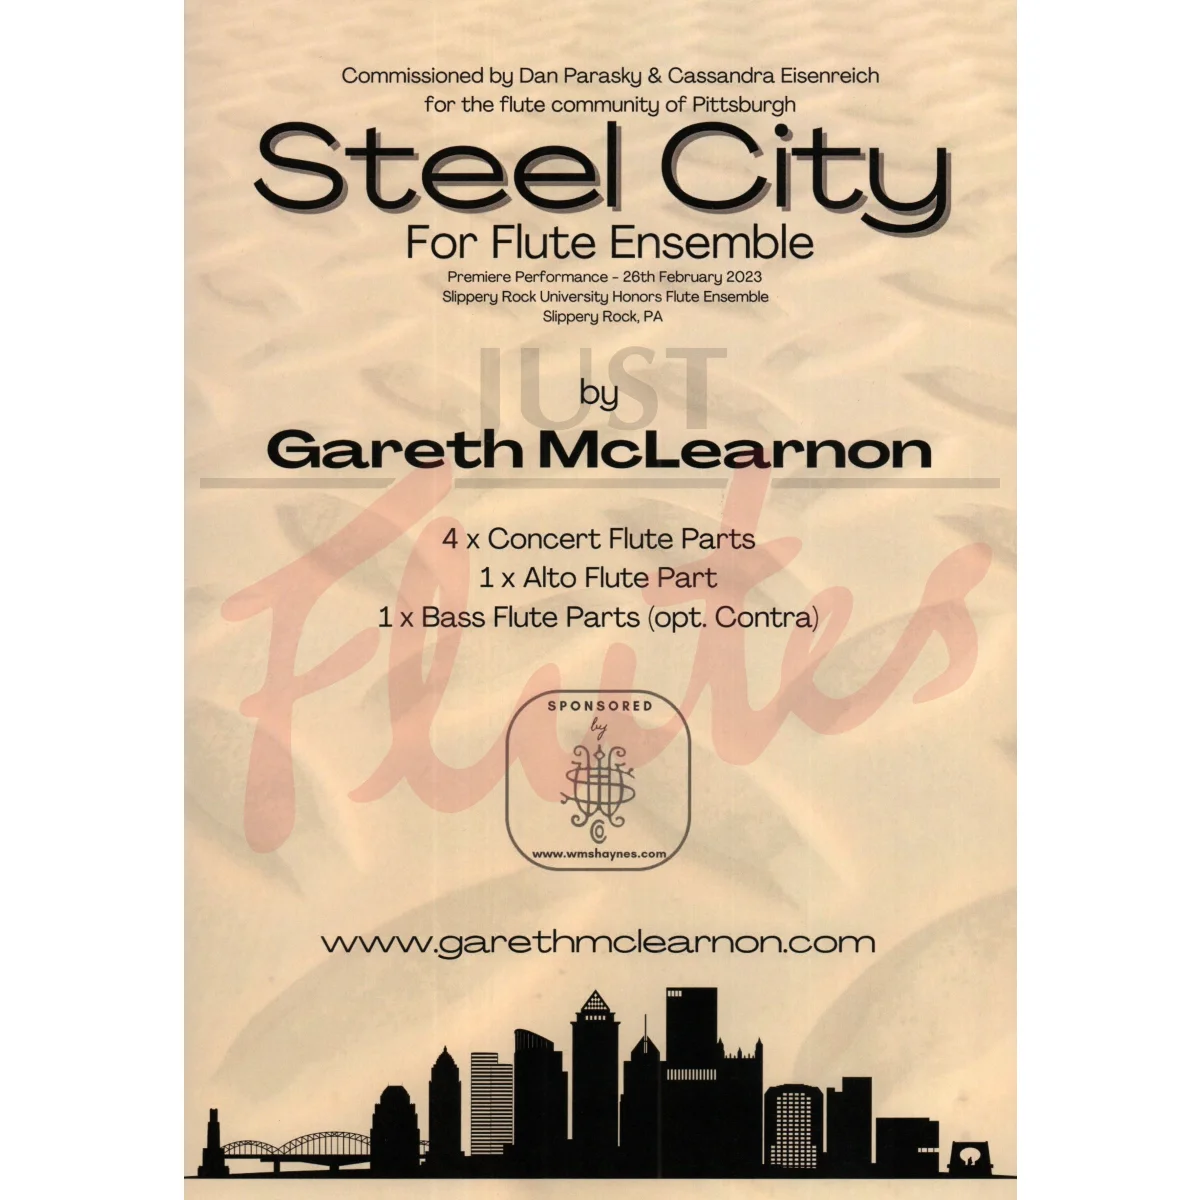 Steel City for Flute Ensemble